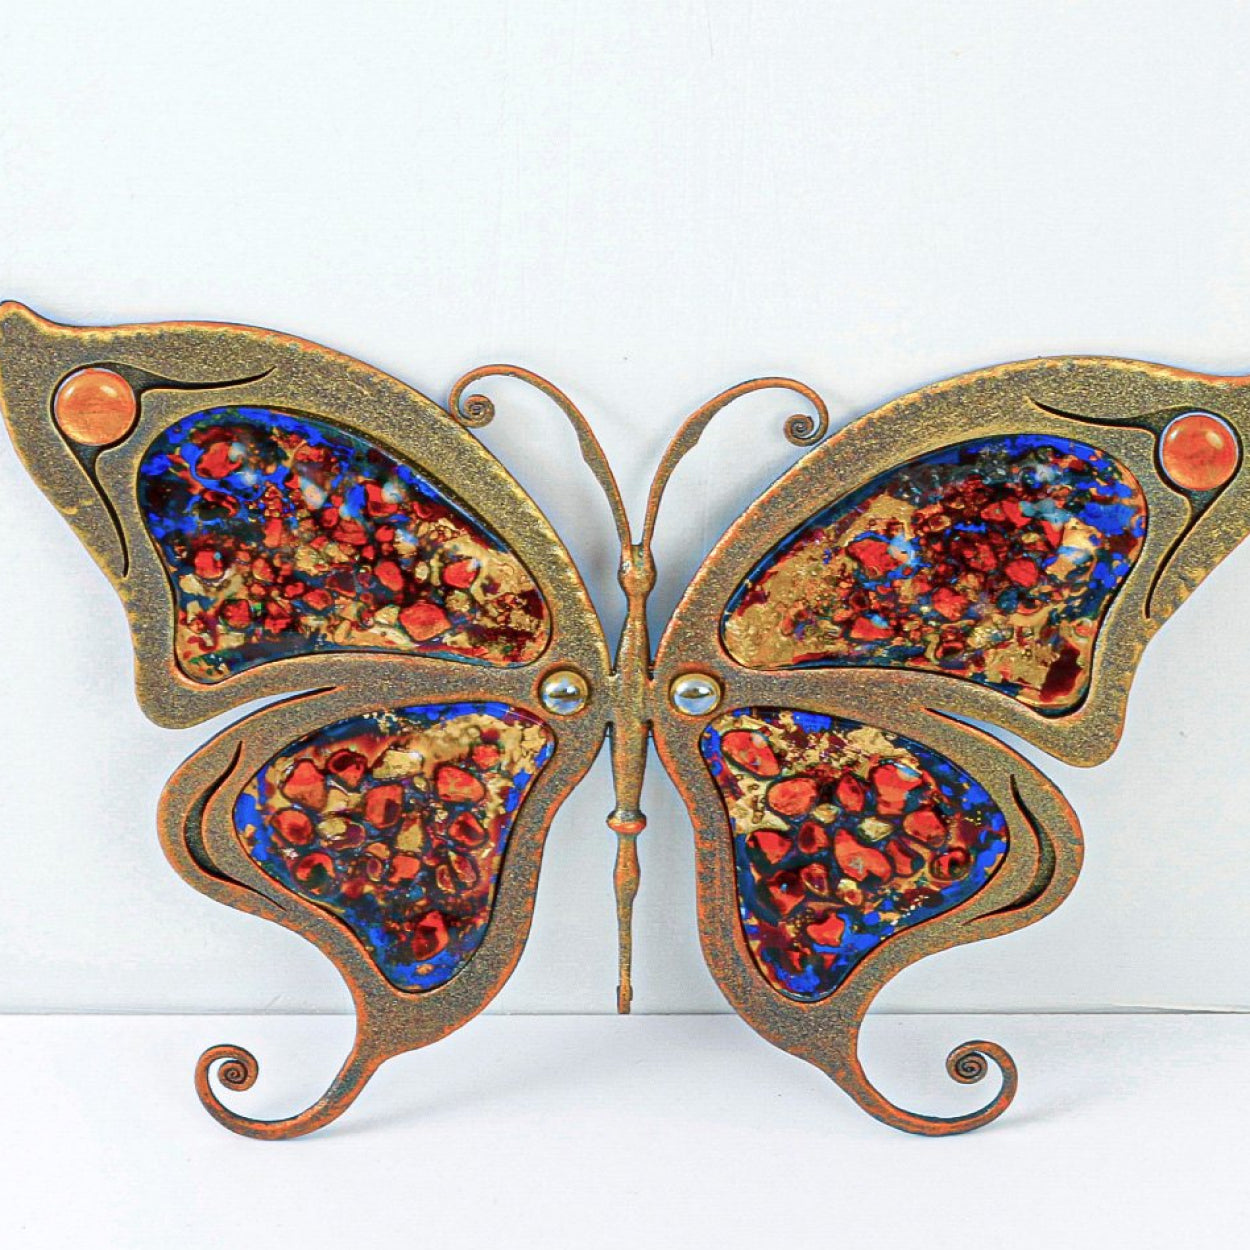 Unikalna rozeta kuta motyl z kolorowym szkłem - do bram ogrodzeń bralustrad